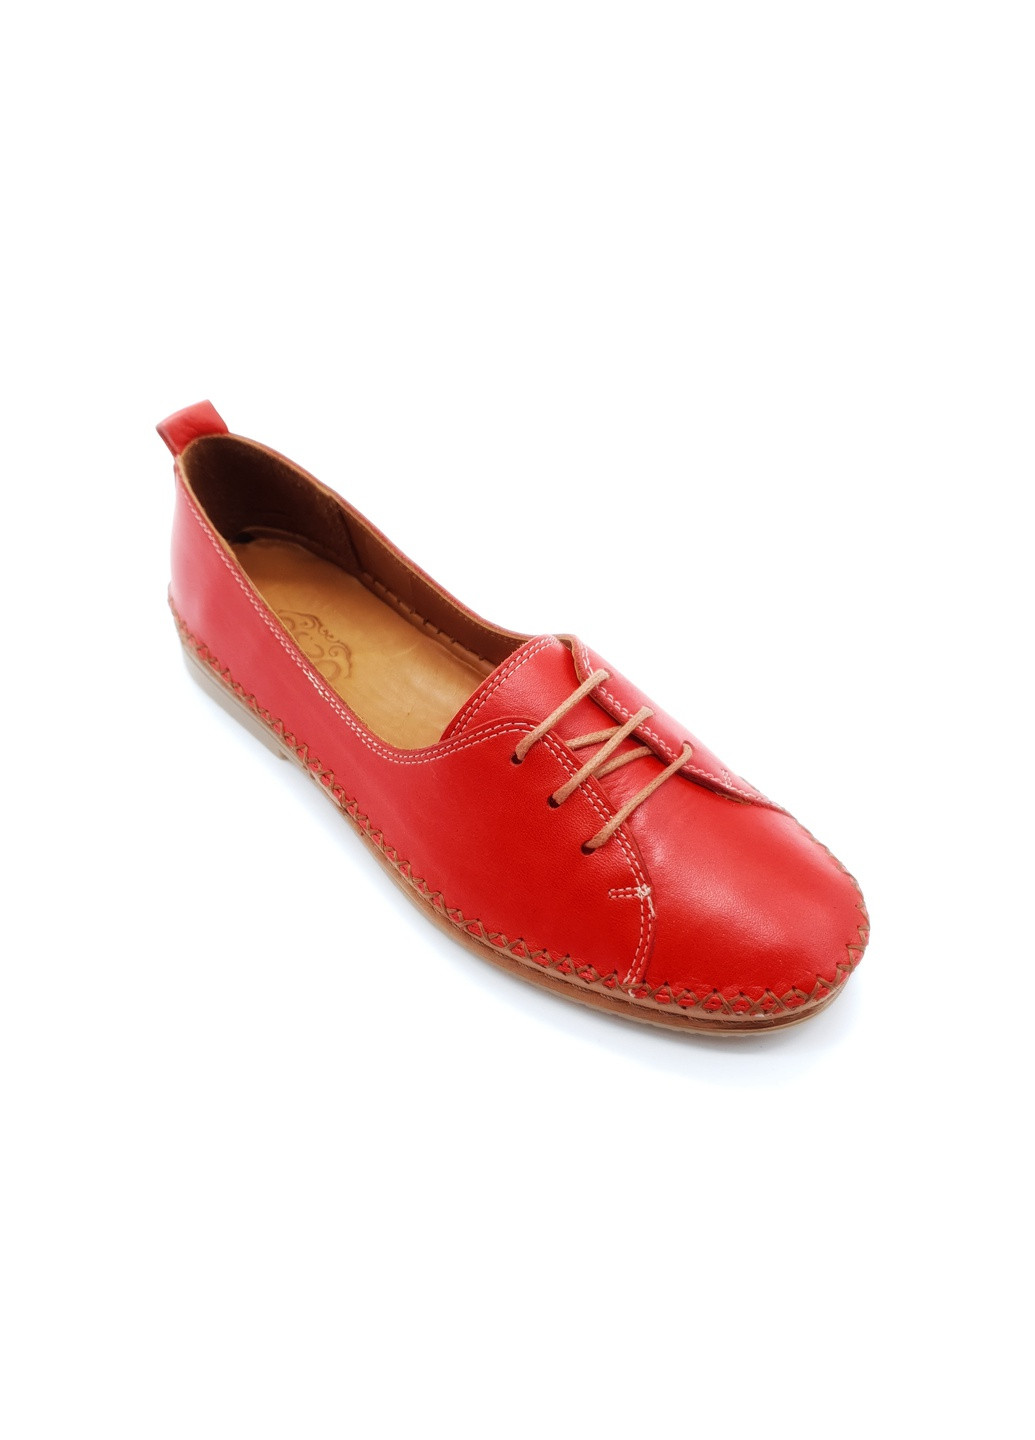 Женские туфли красные кожаные OS-17-2 23 см(р) Osso